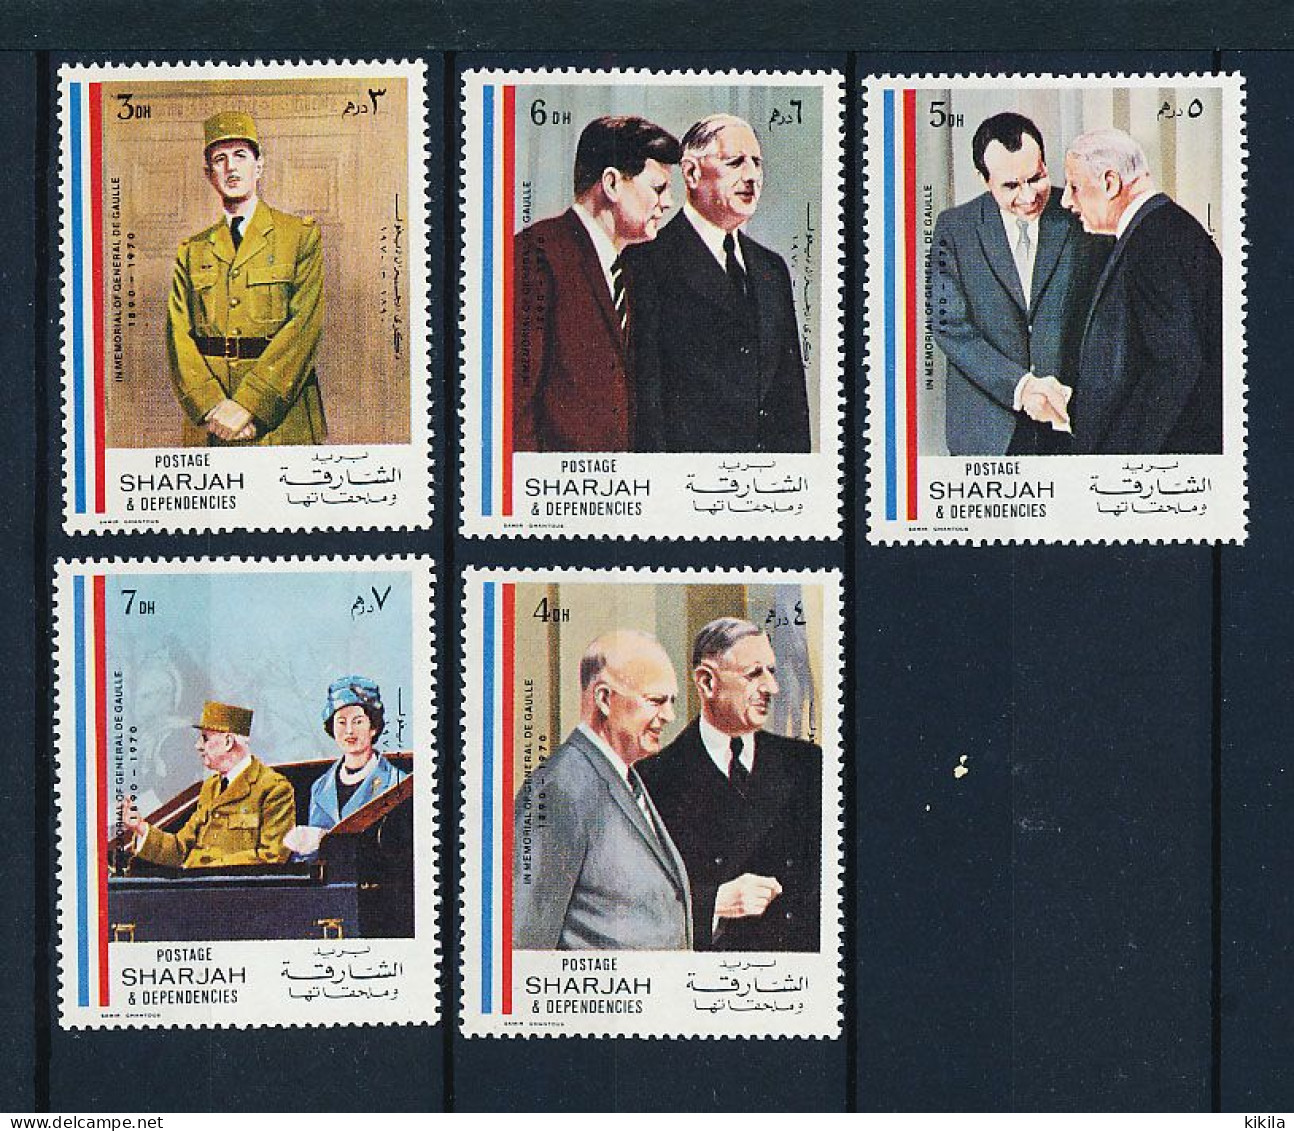 SHARJAH 5 Timbres Neufs GENERAL DE GAULLE Président De La République Française XVI-1 Avec Eisenhower, Nixon, Kennedy,* - De Gaulle (General)